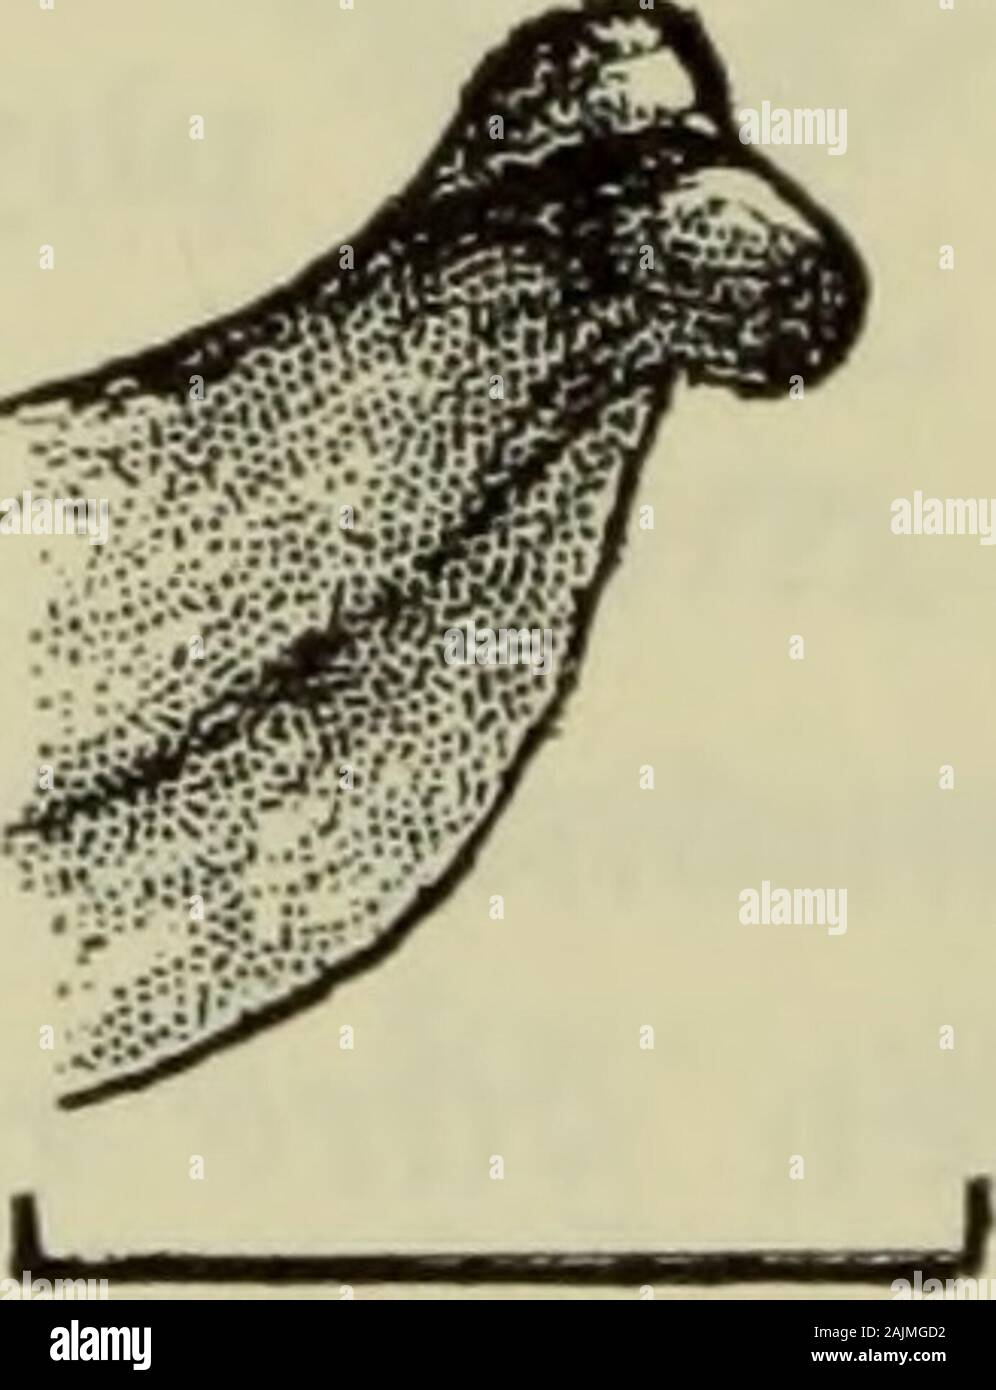 Danmarks fauna; illustrerede haandbøger over den danske dyreverden.. . 0J5mm. OJmm. Fig. 177. Zora nemoralis ^: Højre palpes og dens (stærkt forstørrede) tibialapophyses yderside. delvis opløst i pletter. Fraregnet spidsen er sternum så langsom bred. 1. og 2. metatarse har hver 3 par ventrale torne. 1. tibiahar 7 par, 2. tibia 6-8 par. Hofter, hofteringe og lår lyse-brune, de øvrige led mørkebrune, metatarserne mørkest. Alleleddene uden længdestriber og ringe. Bagkroppen næsten dobbelt så lang som bred. Tegningen,der består af prikker og streger, ligner næsten Z. spinimanas;men hjertestriben e Stock Photo